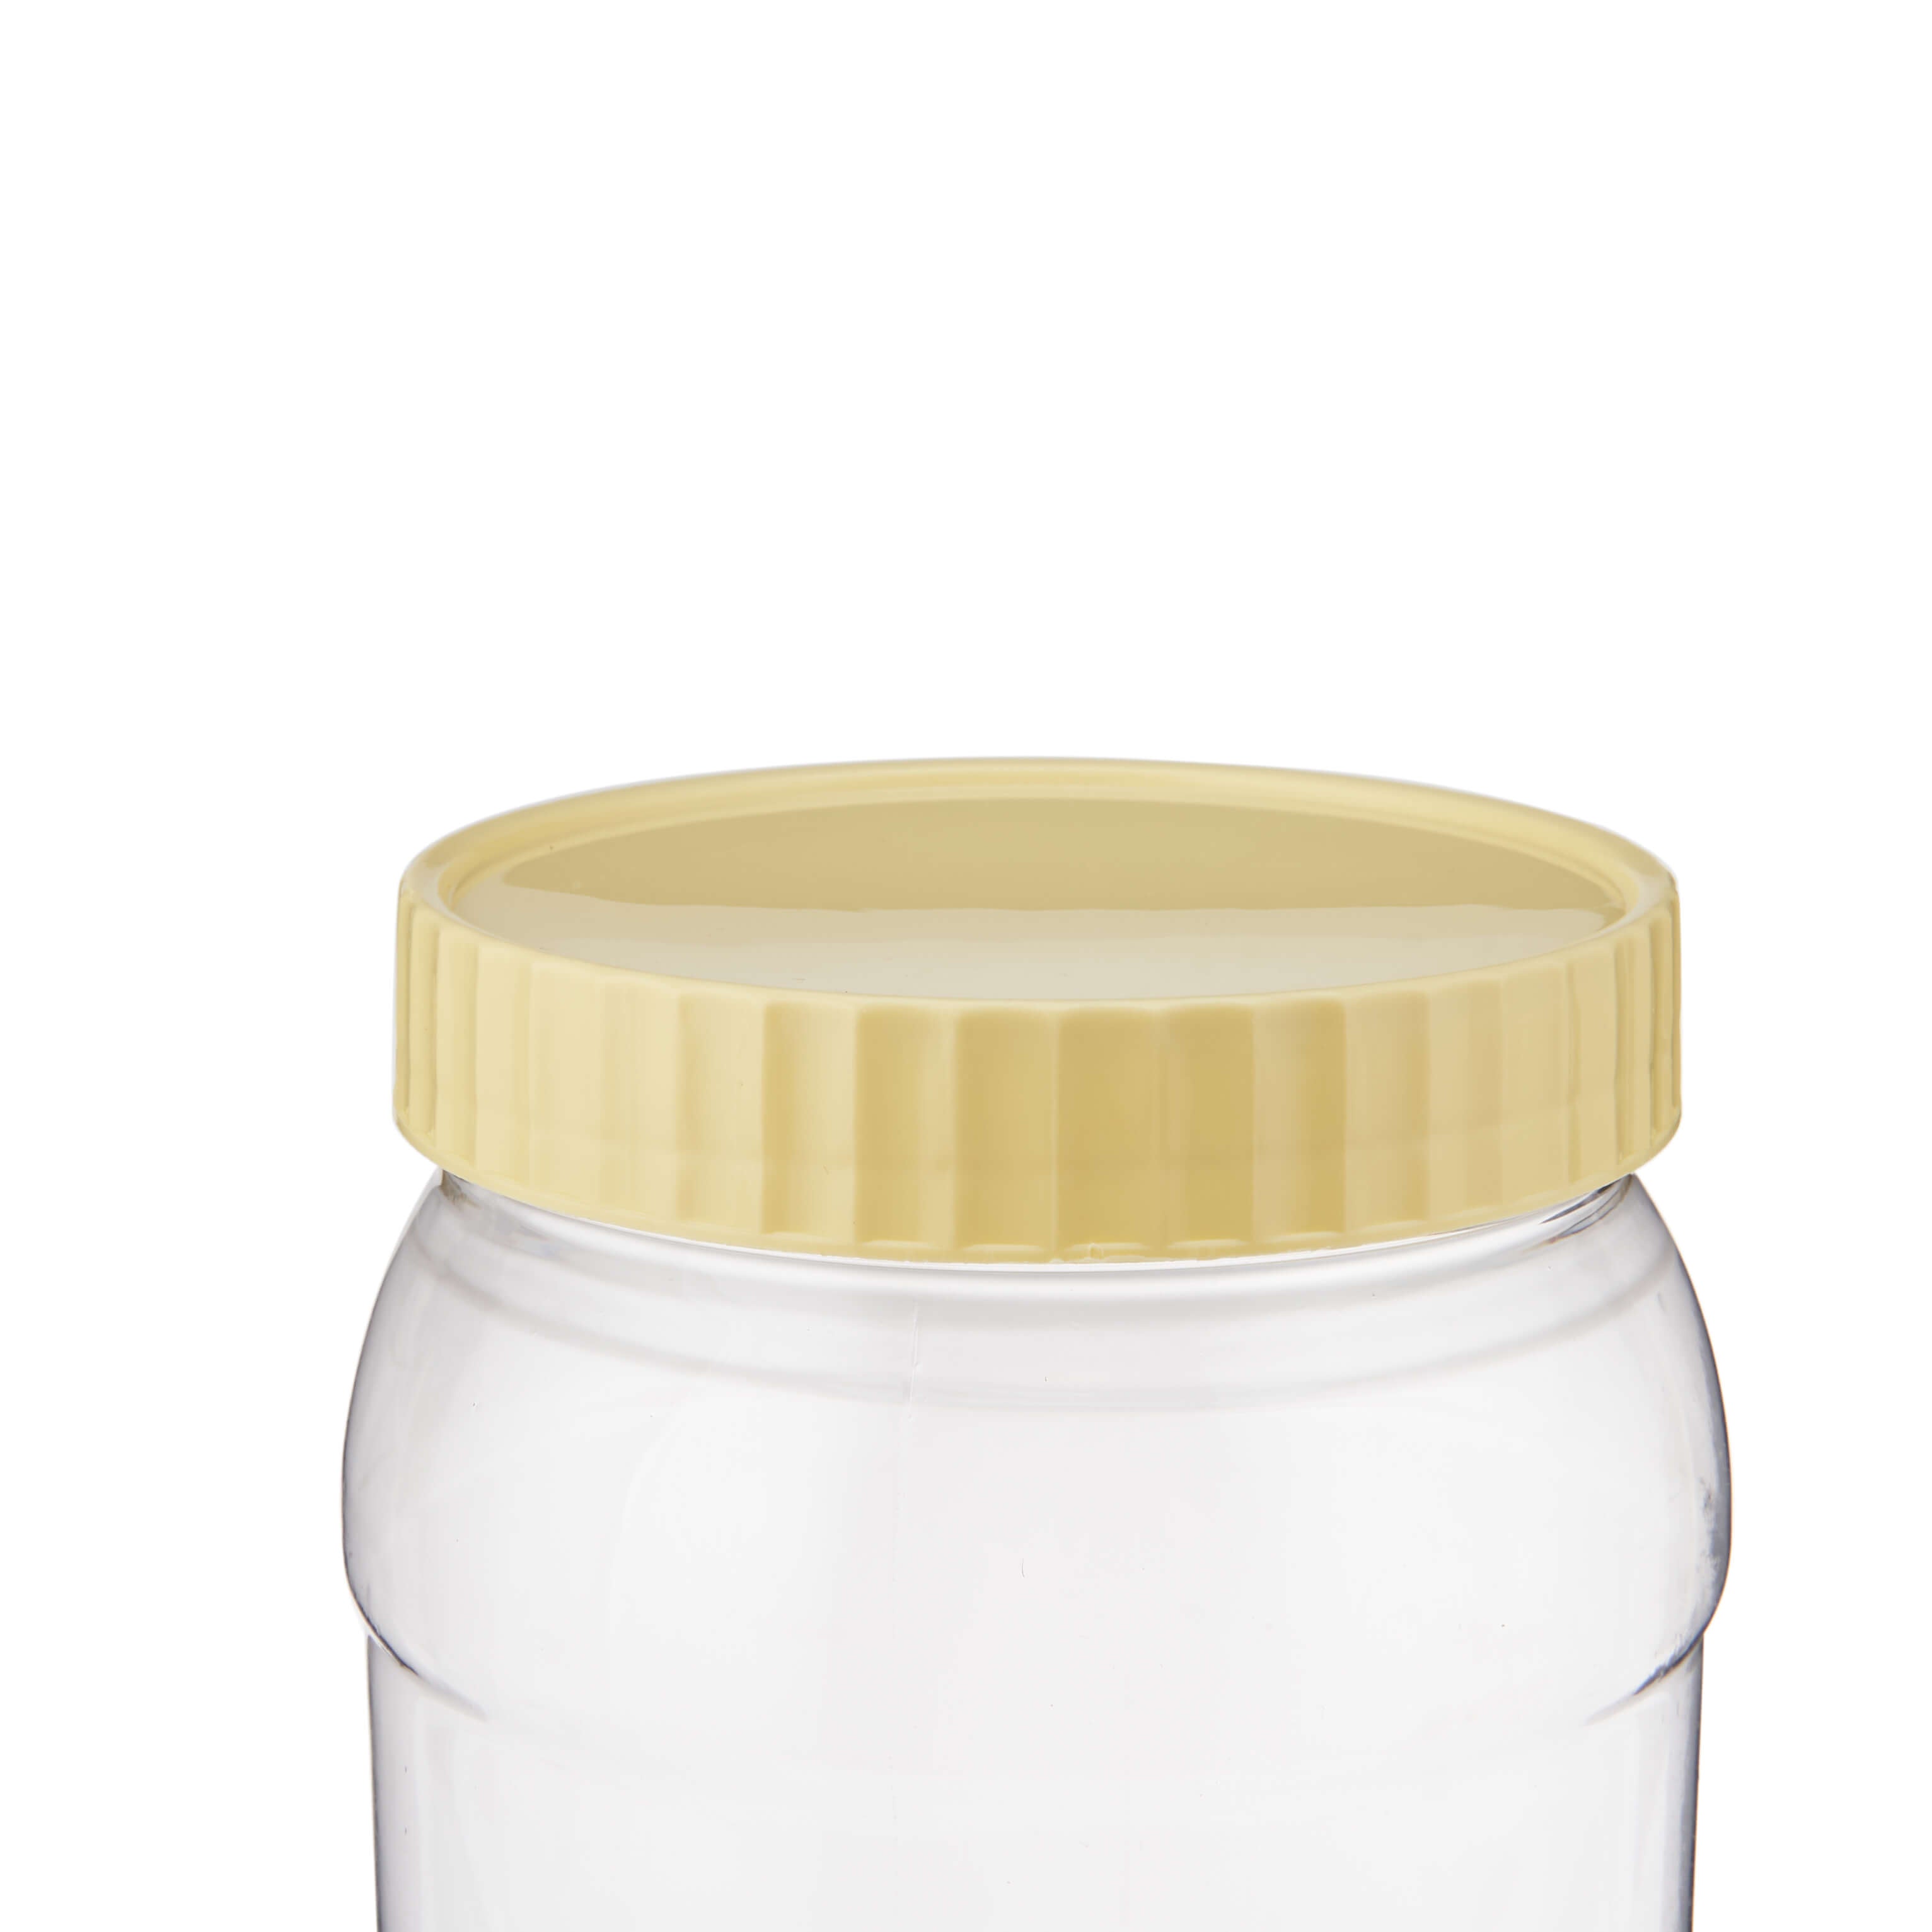 1500 ml Plastic Storage Jar With Lid - Hotpack Global